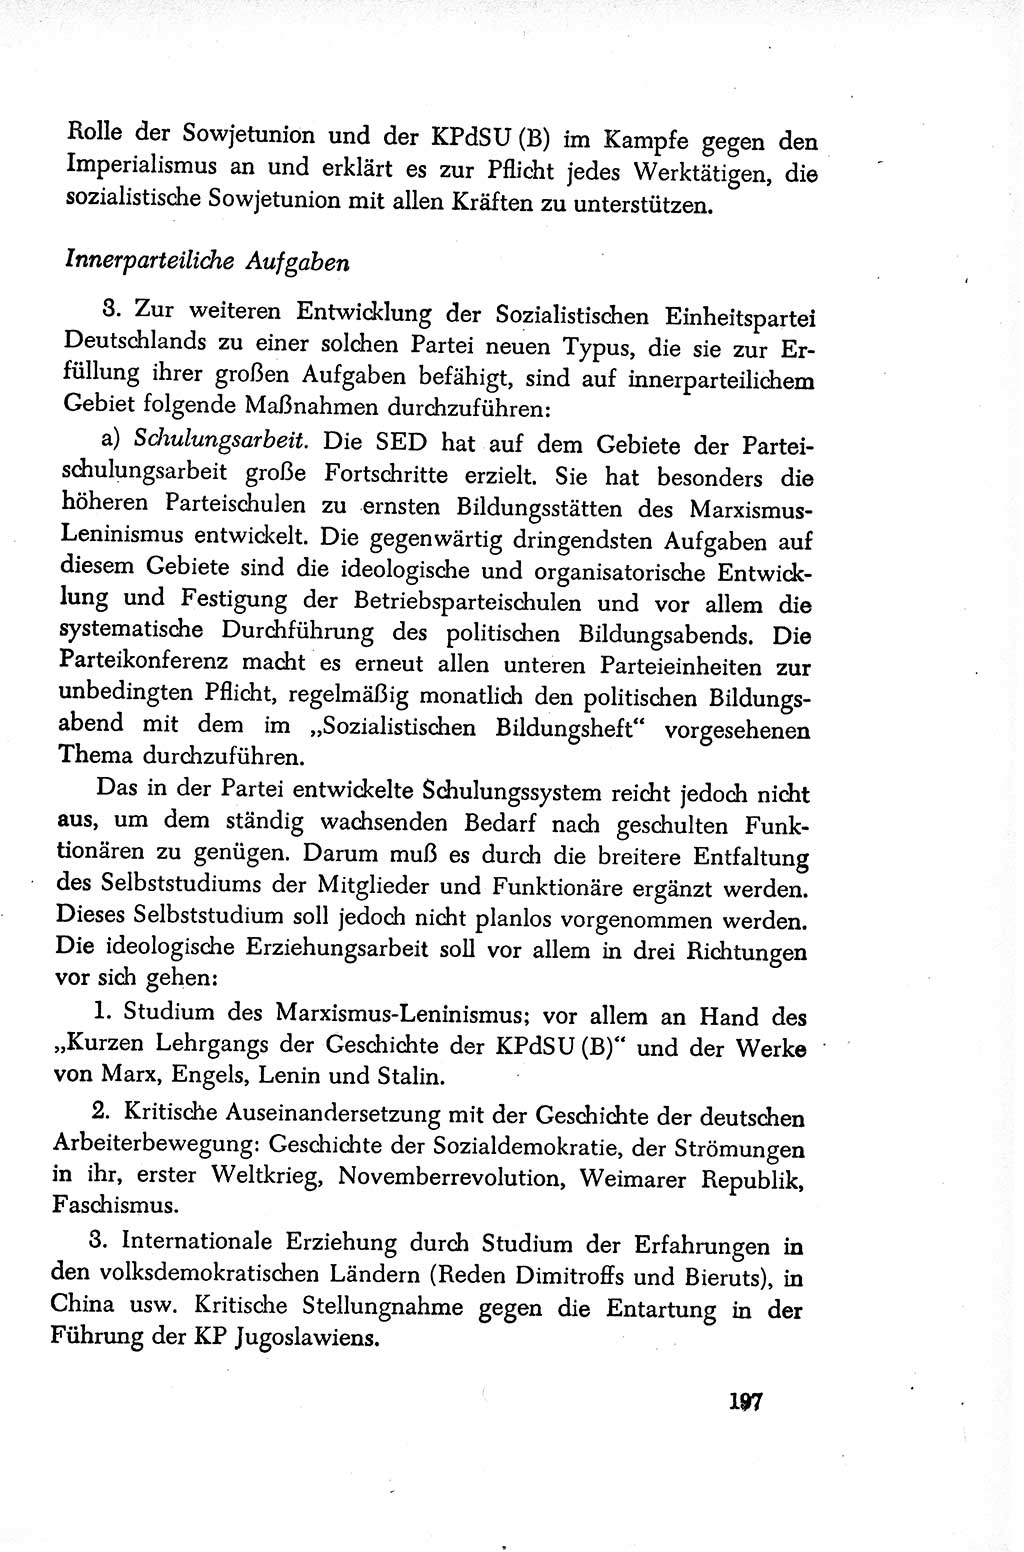 Dokumente der Sozialistischen Einheitspartei Deutschlands (SED) [Sowjetische Besatzungszone (SBZ) Deutschlands/Deutsche Demokratische Republik (DDR)] 1948-1950, Seite 197 (Dok. SED SBZ Dtl. DDR 1948-1950, S. 197)